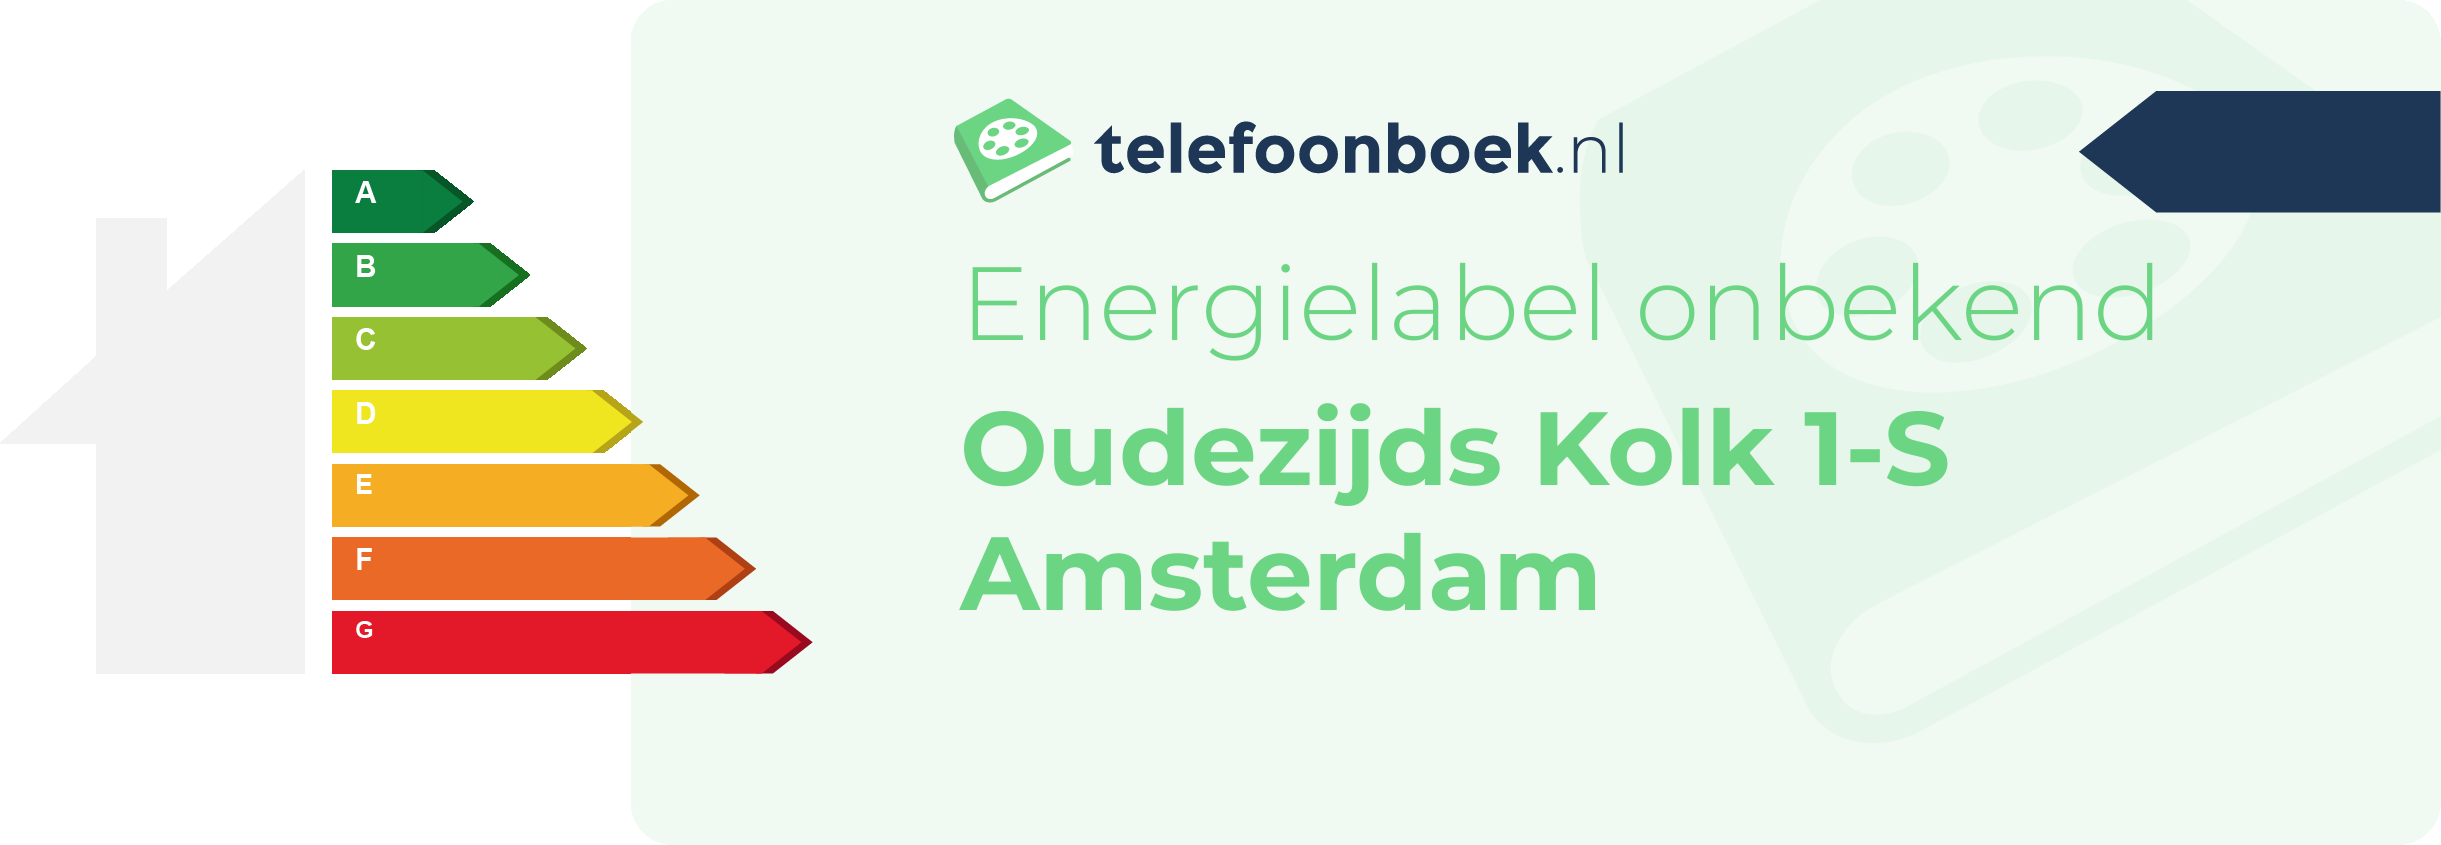 Energielabel Oudezijds Kolk 1-S Amsterdam